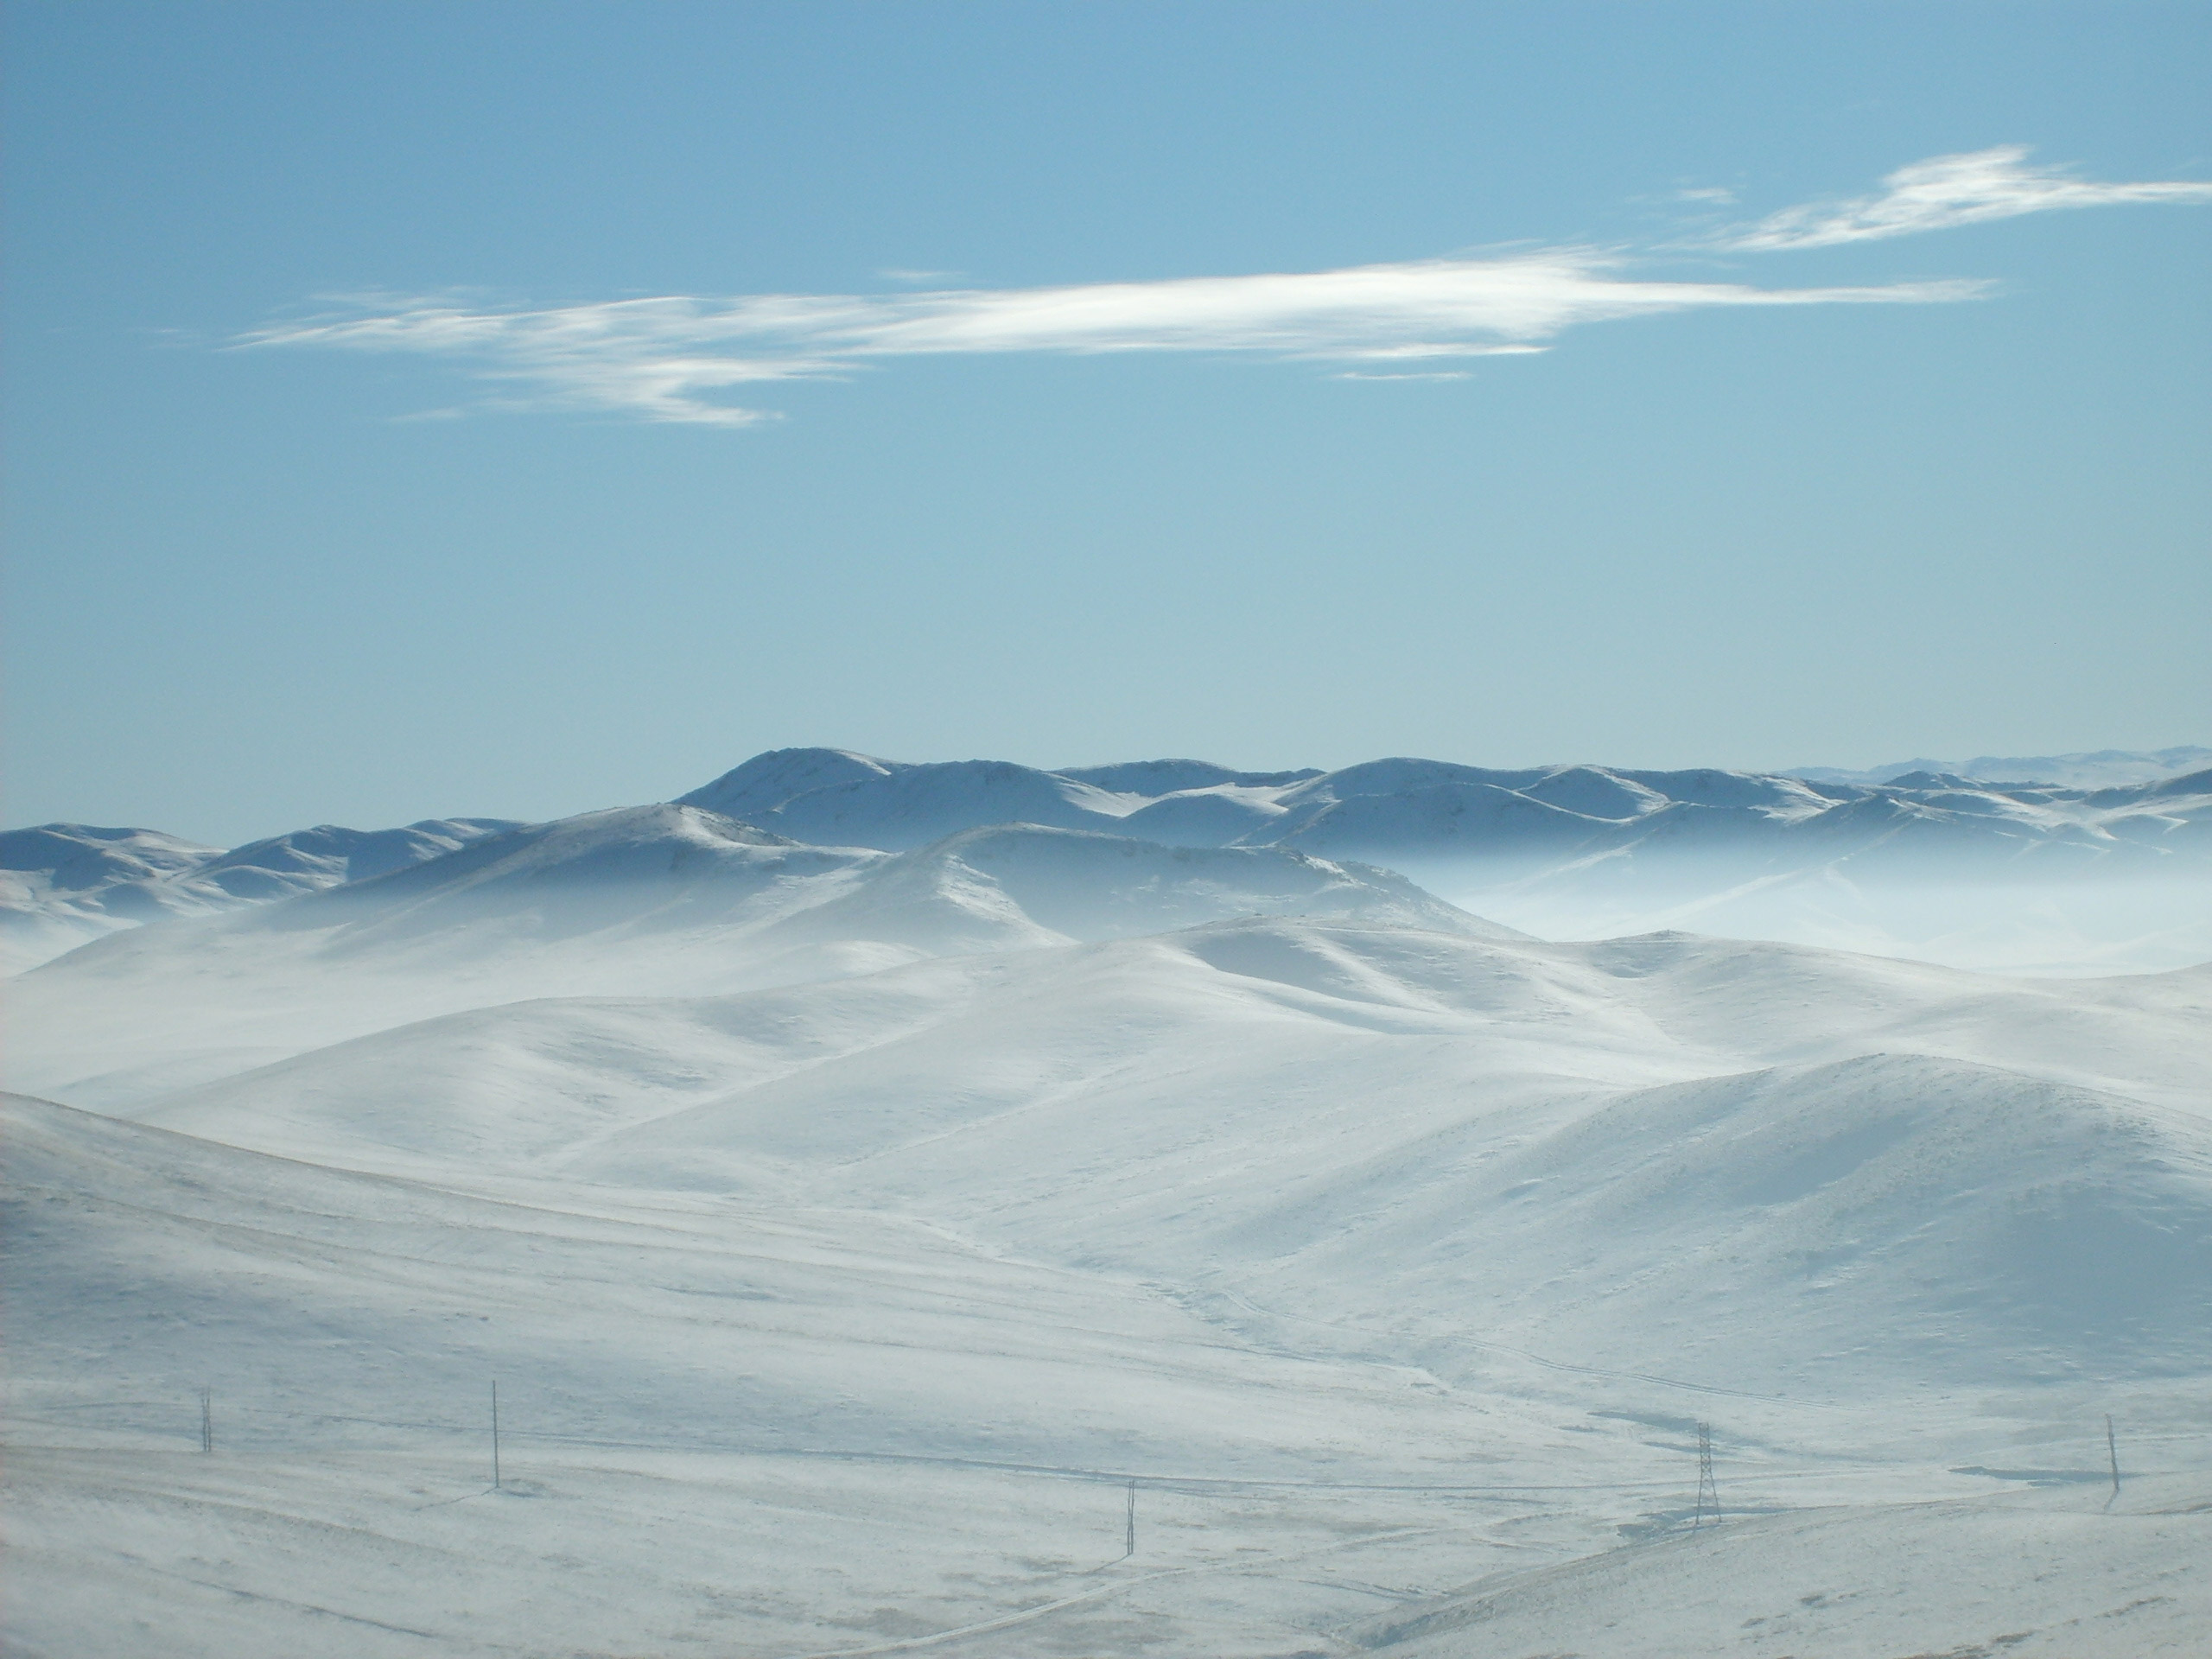 Frozen mountains in Mongolia | Free Stock Photo | LibreShot